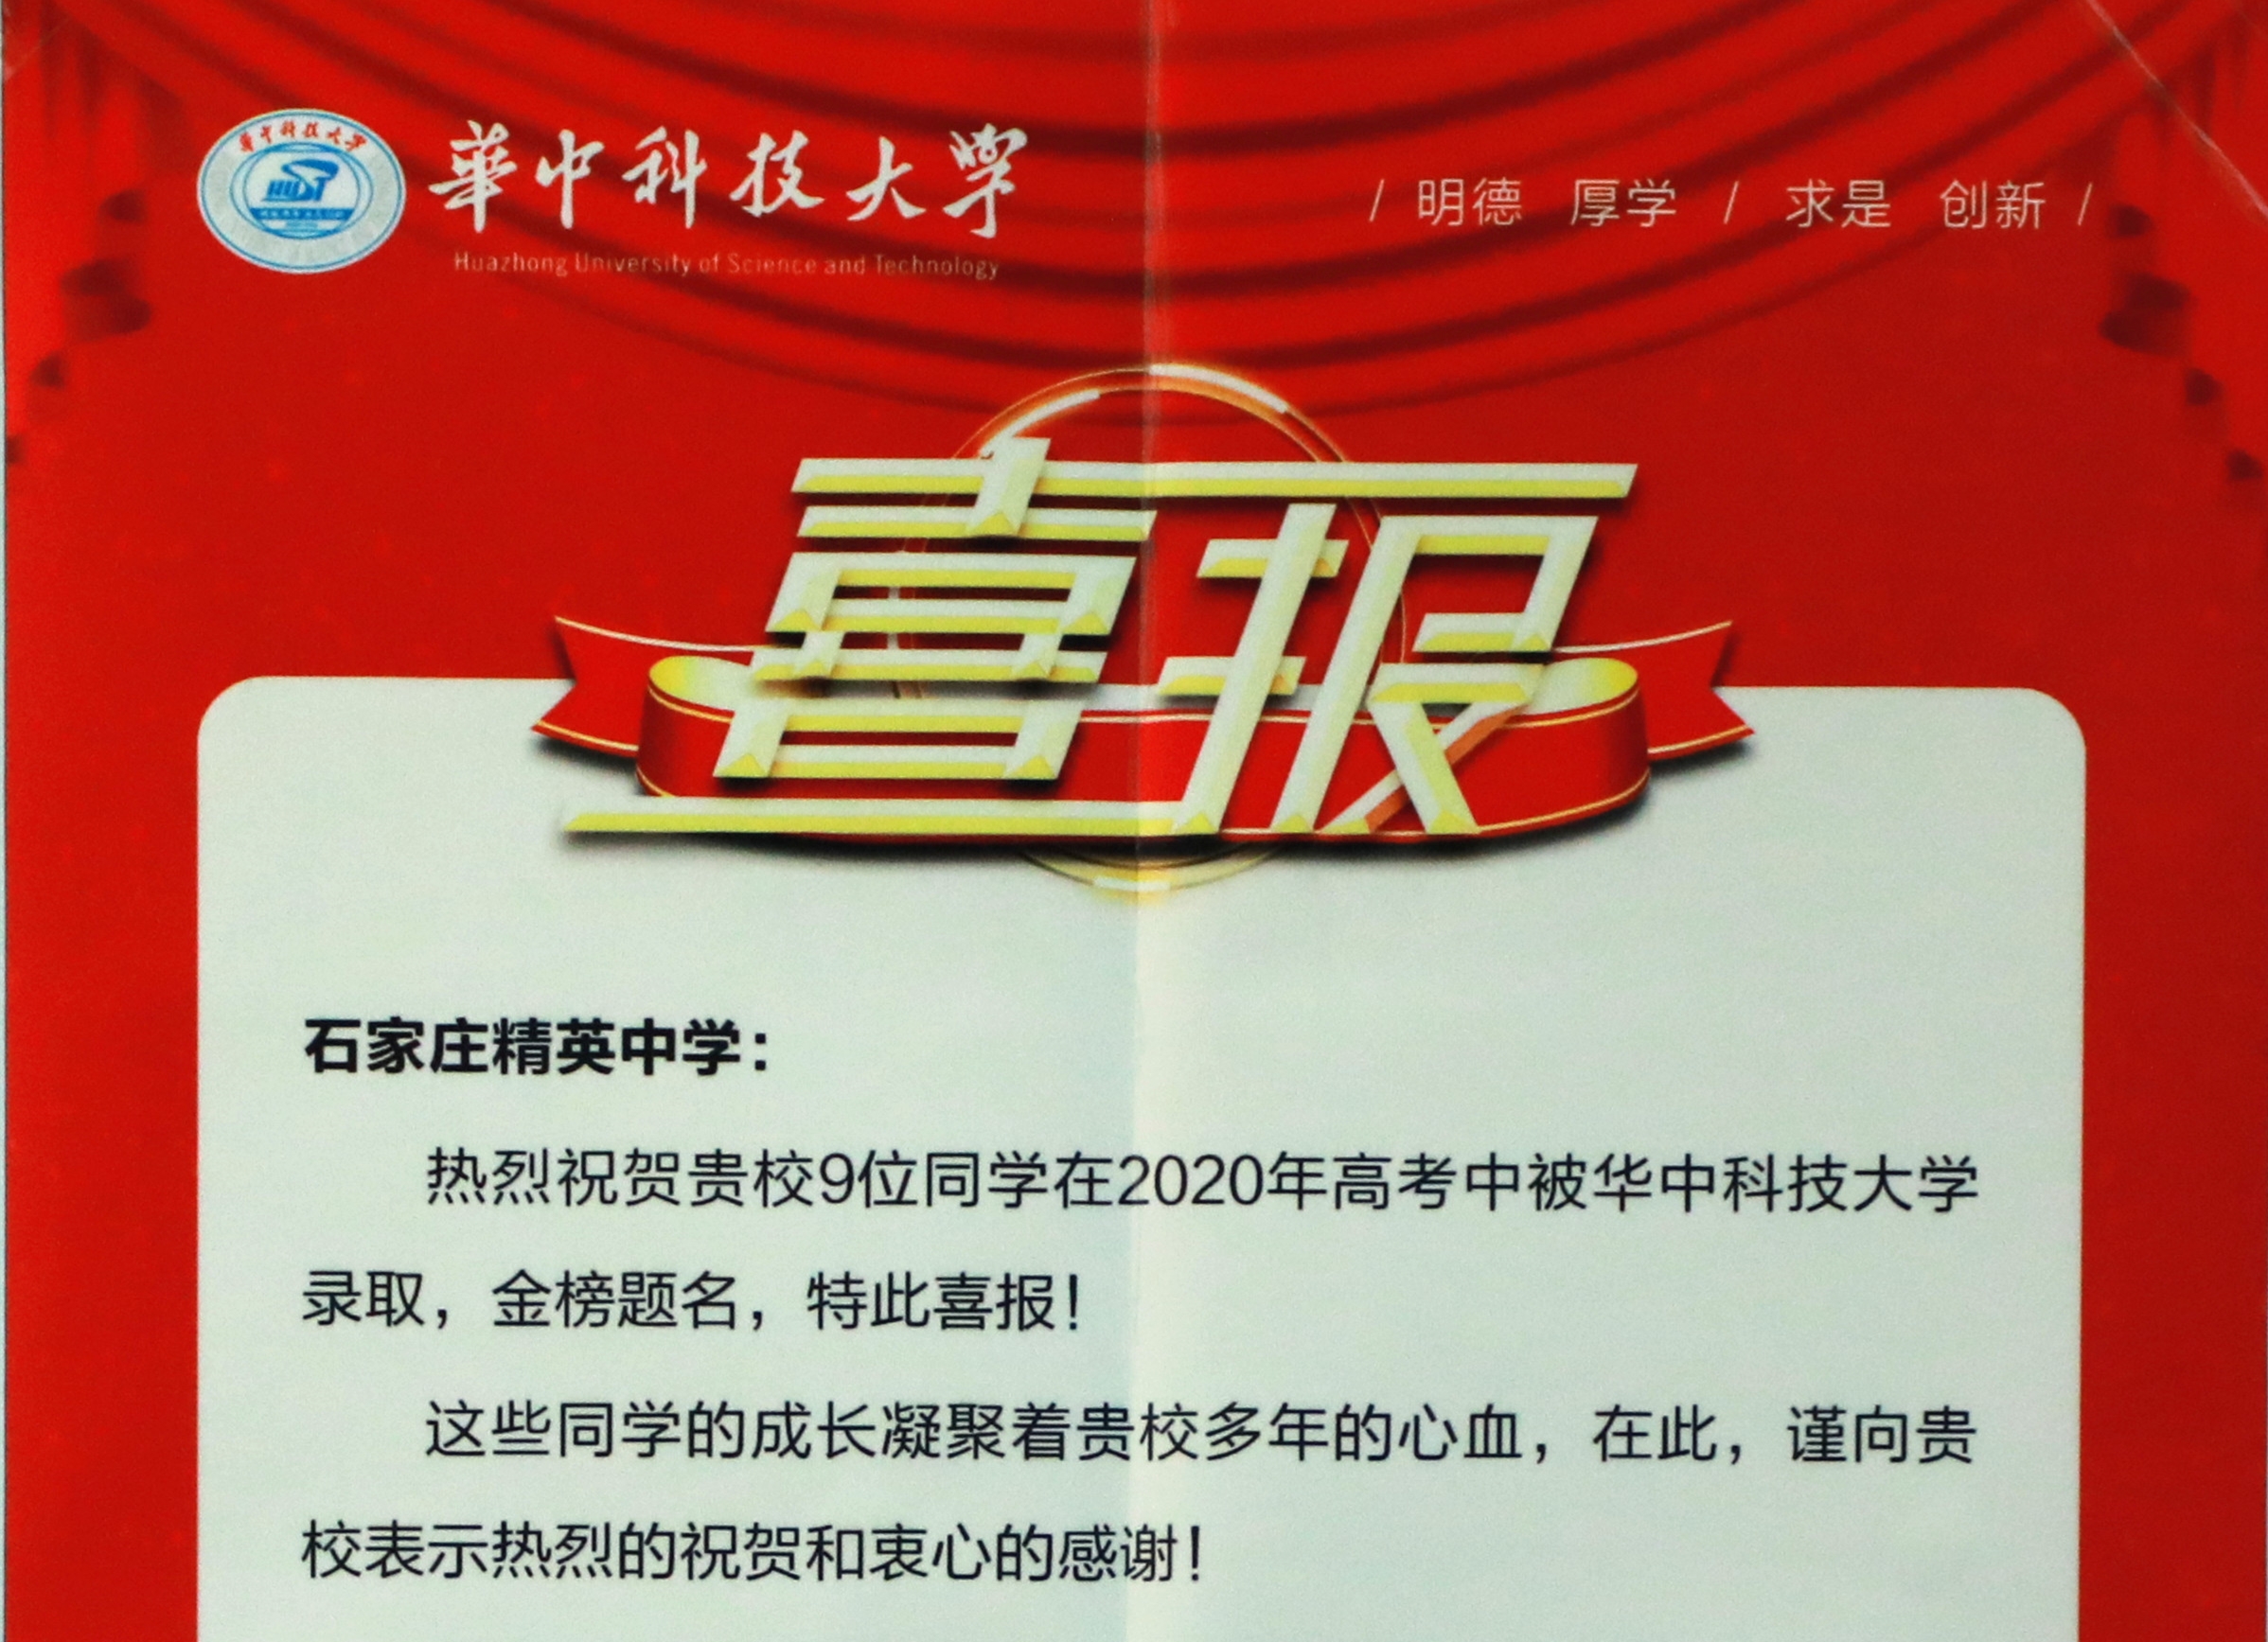 華中科技大學向石家莊精英中學發來喜報